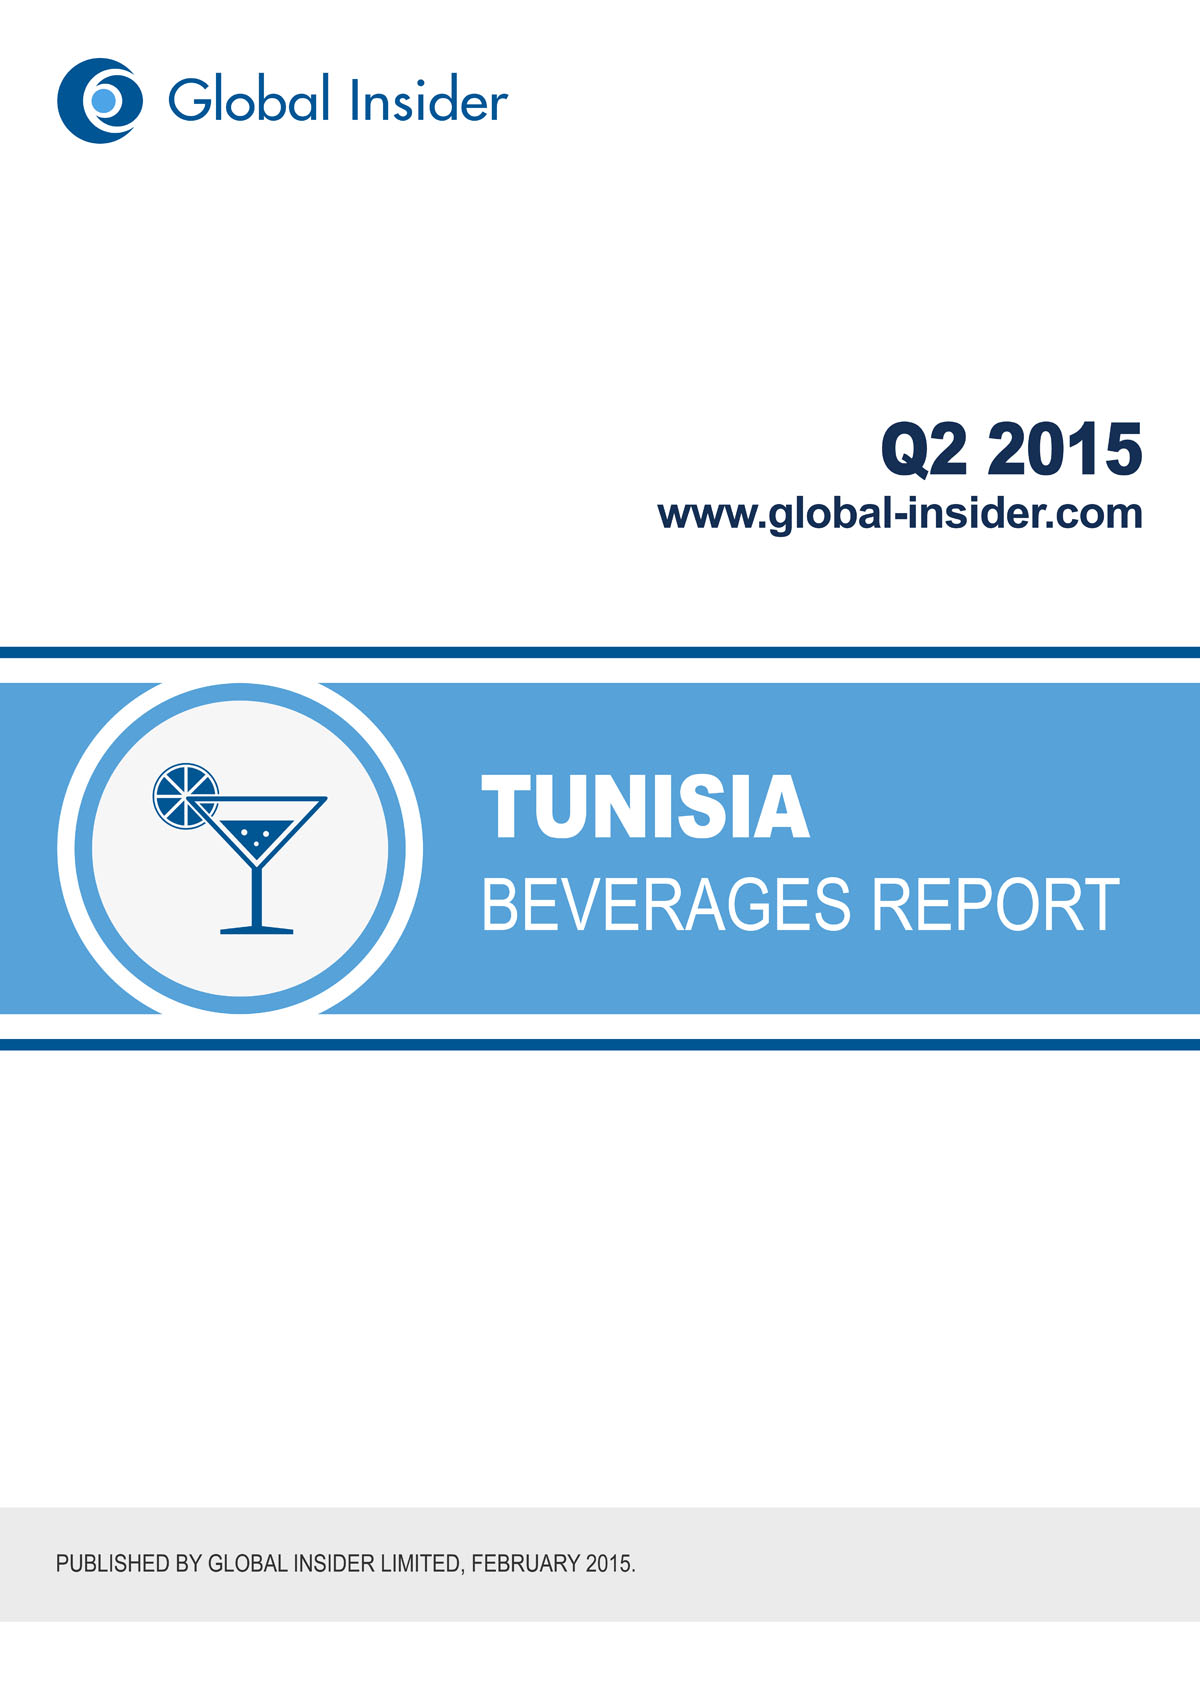 Tunisia Beverages Report